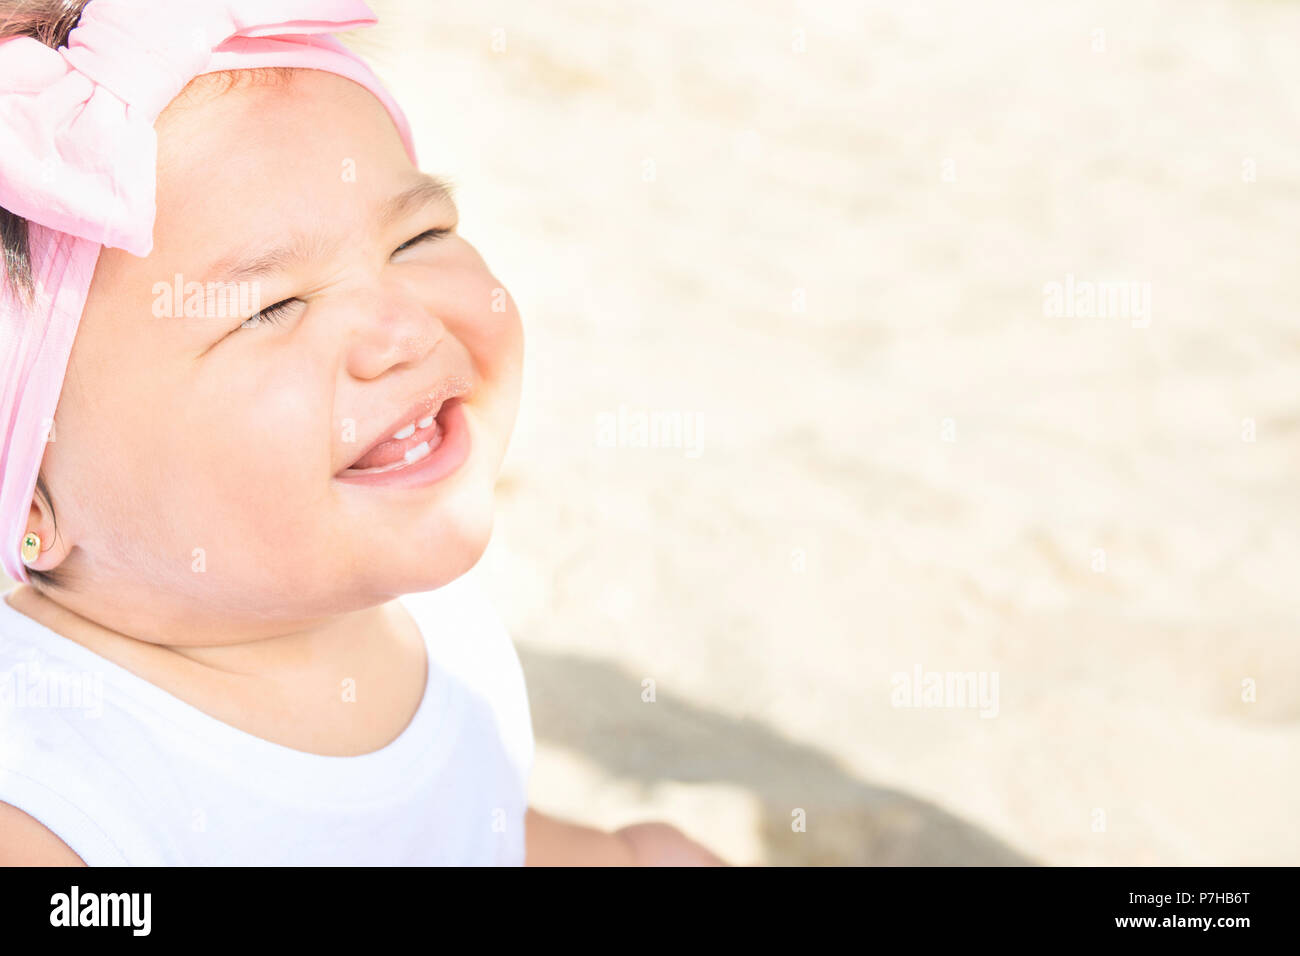 Cute Sweet 1 ans Enfant Bébé fille s'assied sur le sable des plages de l'océan en souriant. Doux visage d'expression. Belle journée ensoleillée. La parentalité, l'enfance Togethernes Banque D'Images